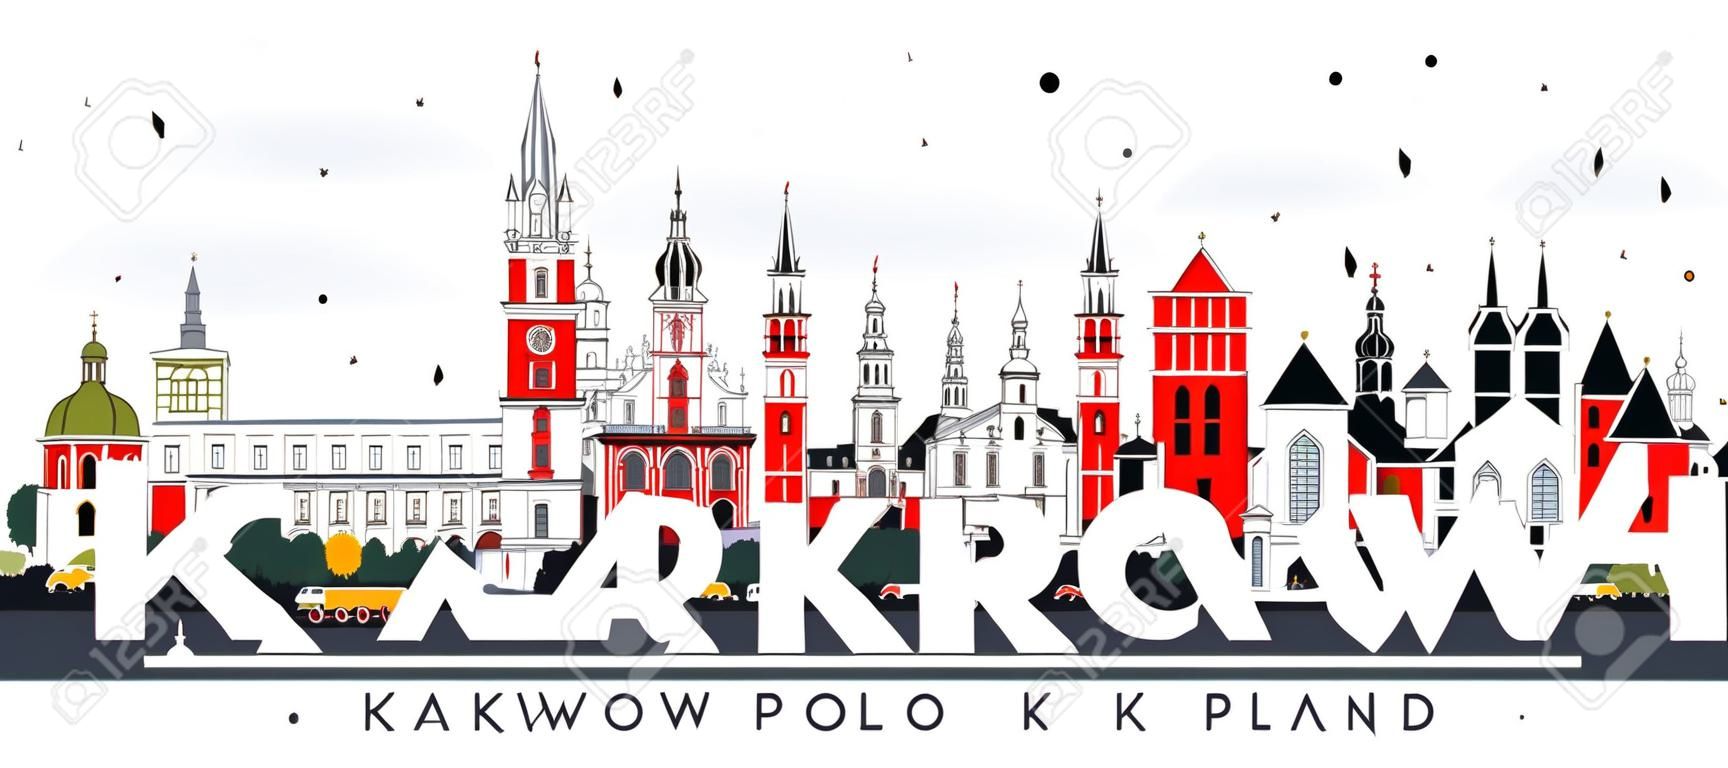 克拉科夫波蘭與在白色隔絕的顏色大廈的市地平線。傳染媒介例證。與歷史的建築學的商務旅遊和旅遊業概念。克拉科夫城市景觀與地標。